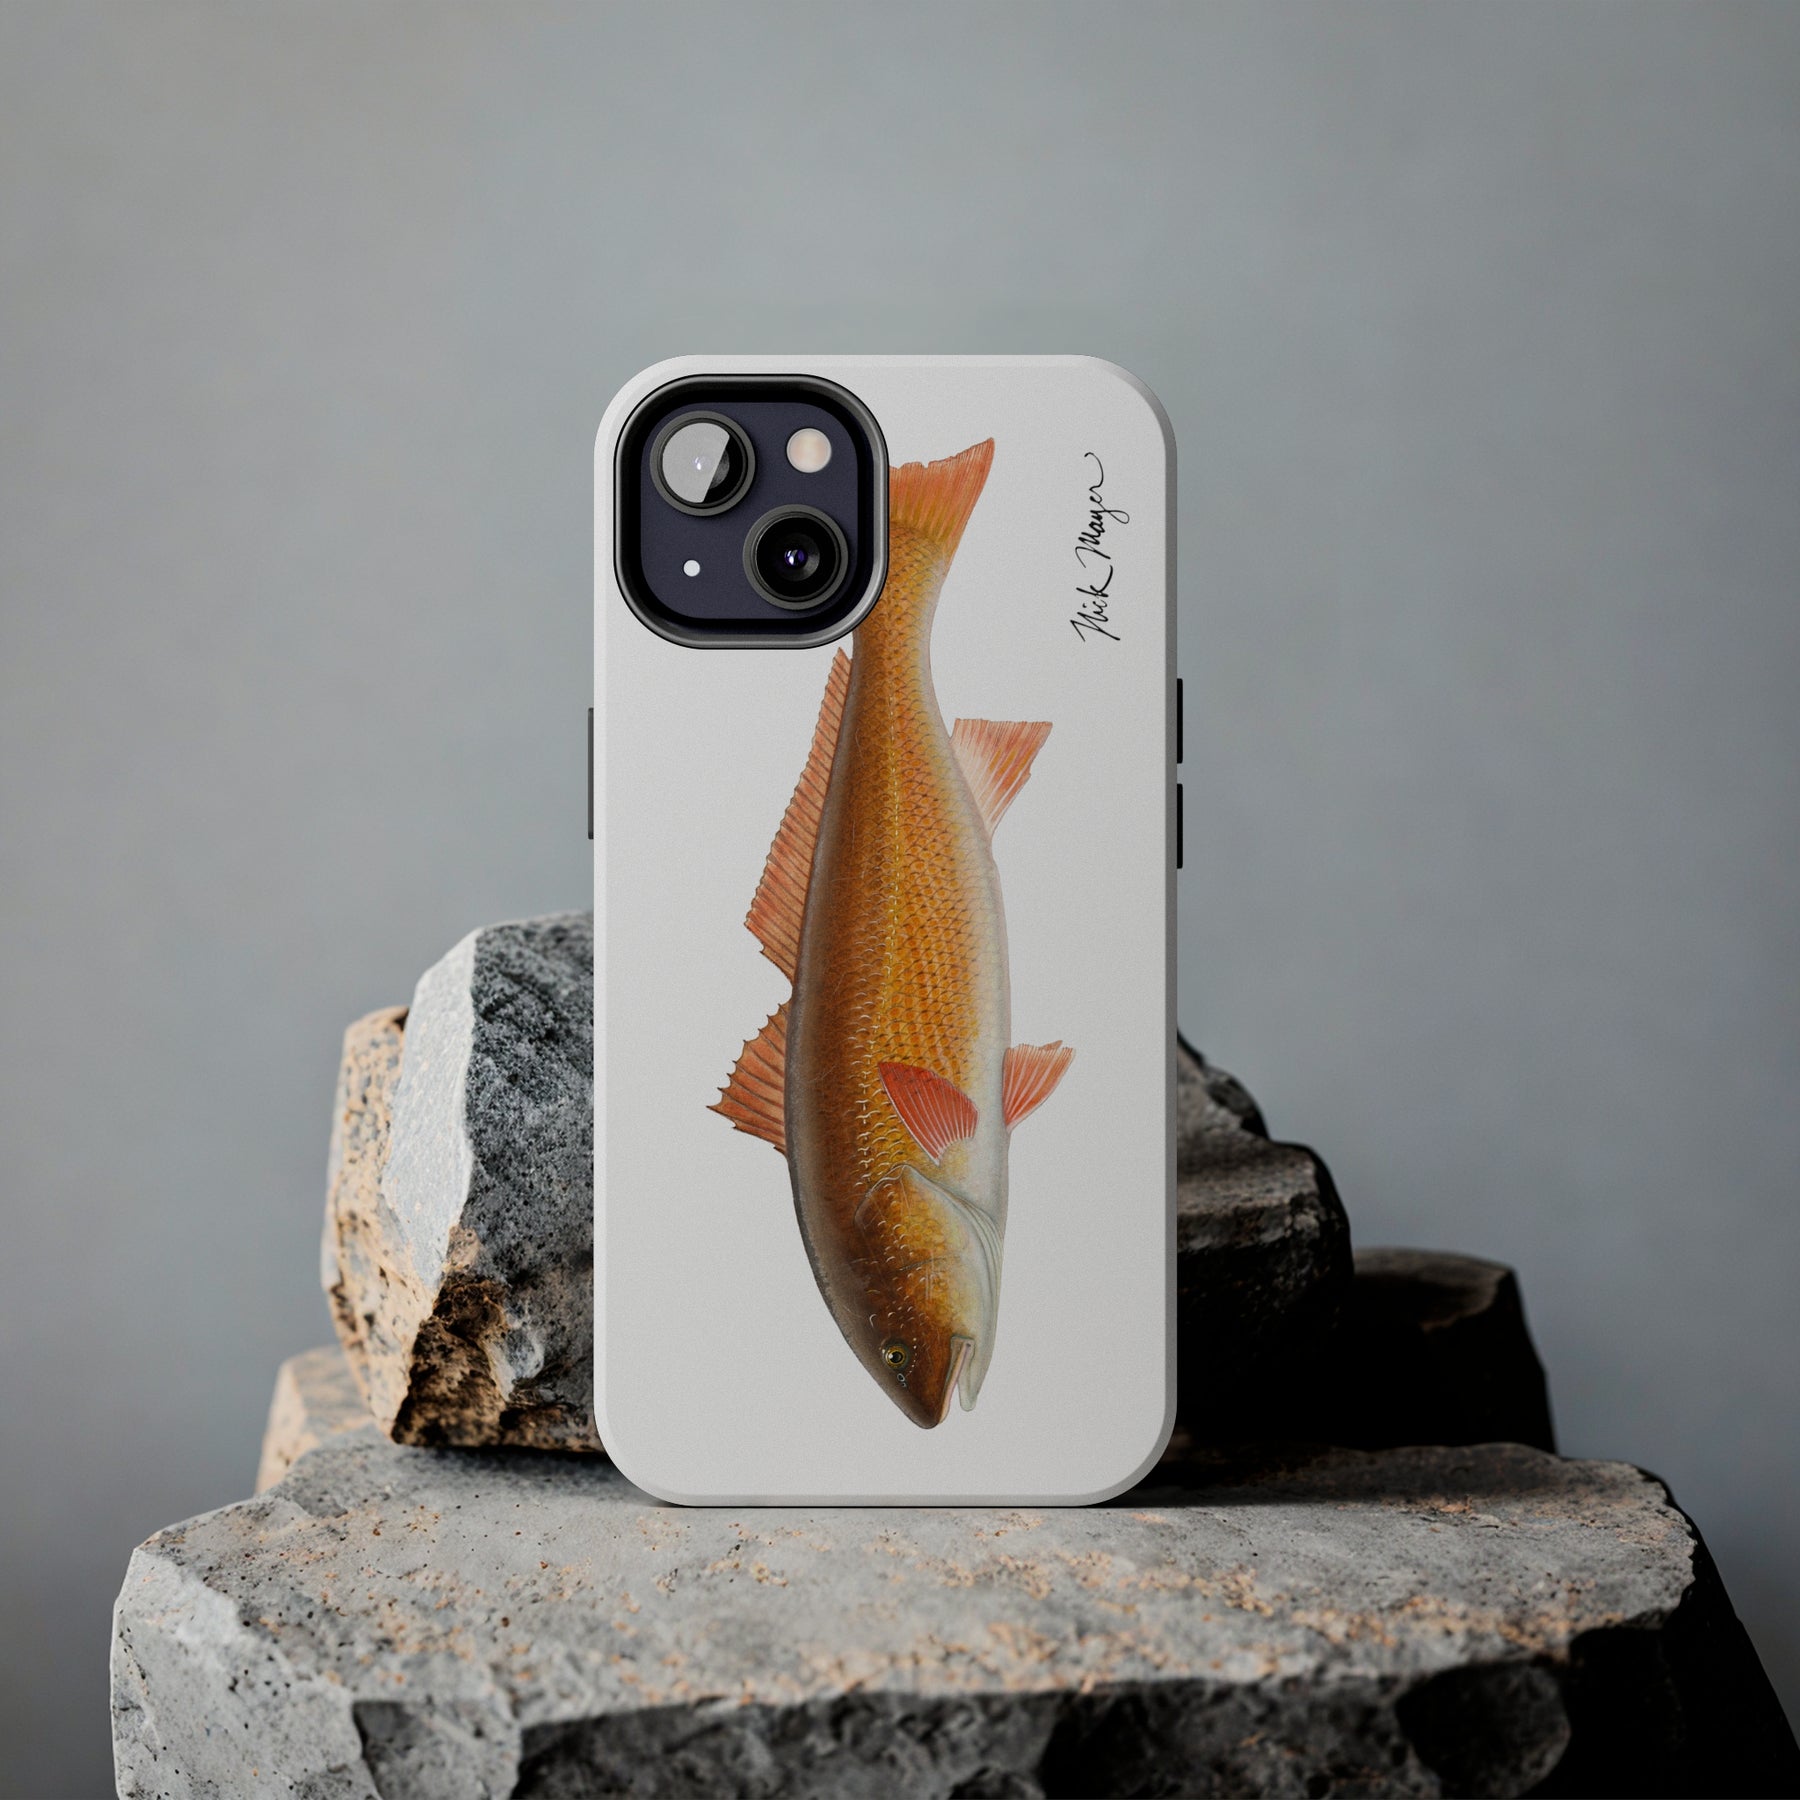 Redfish Phone Case (iPhone)